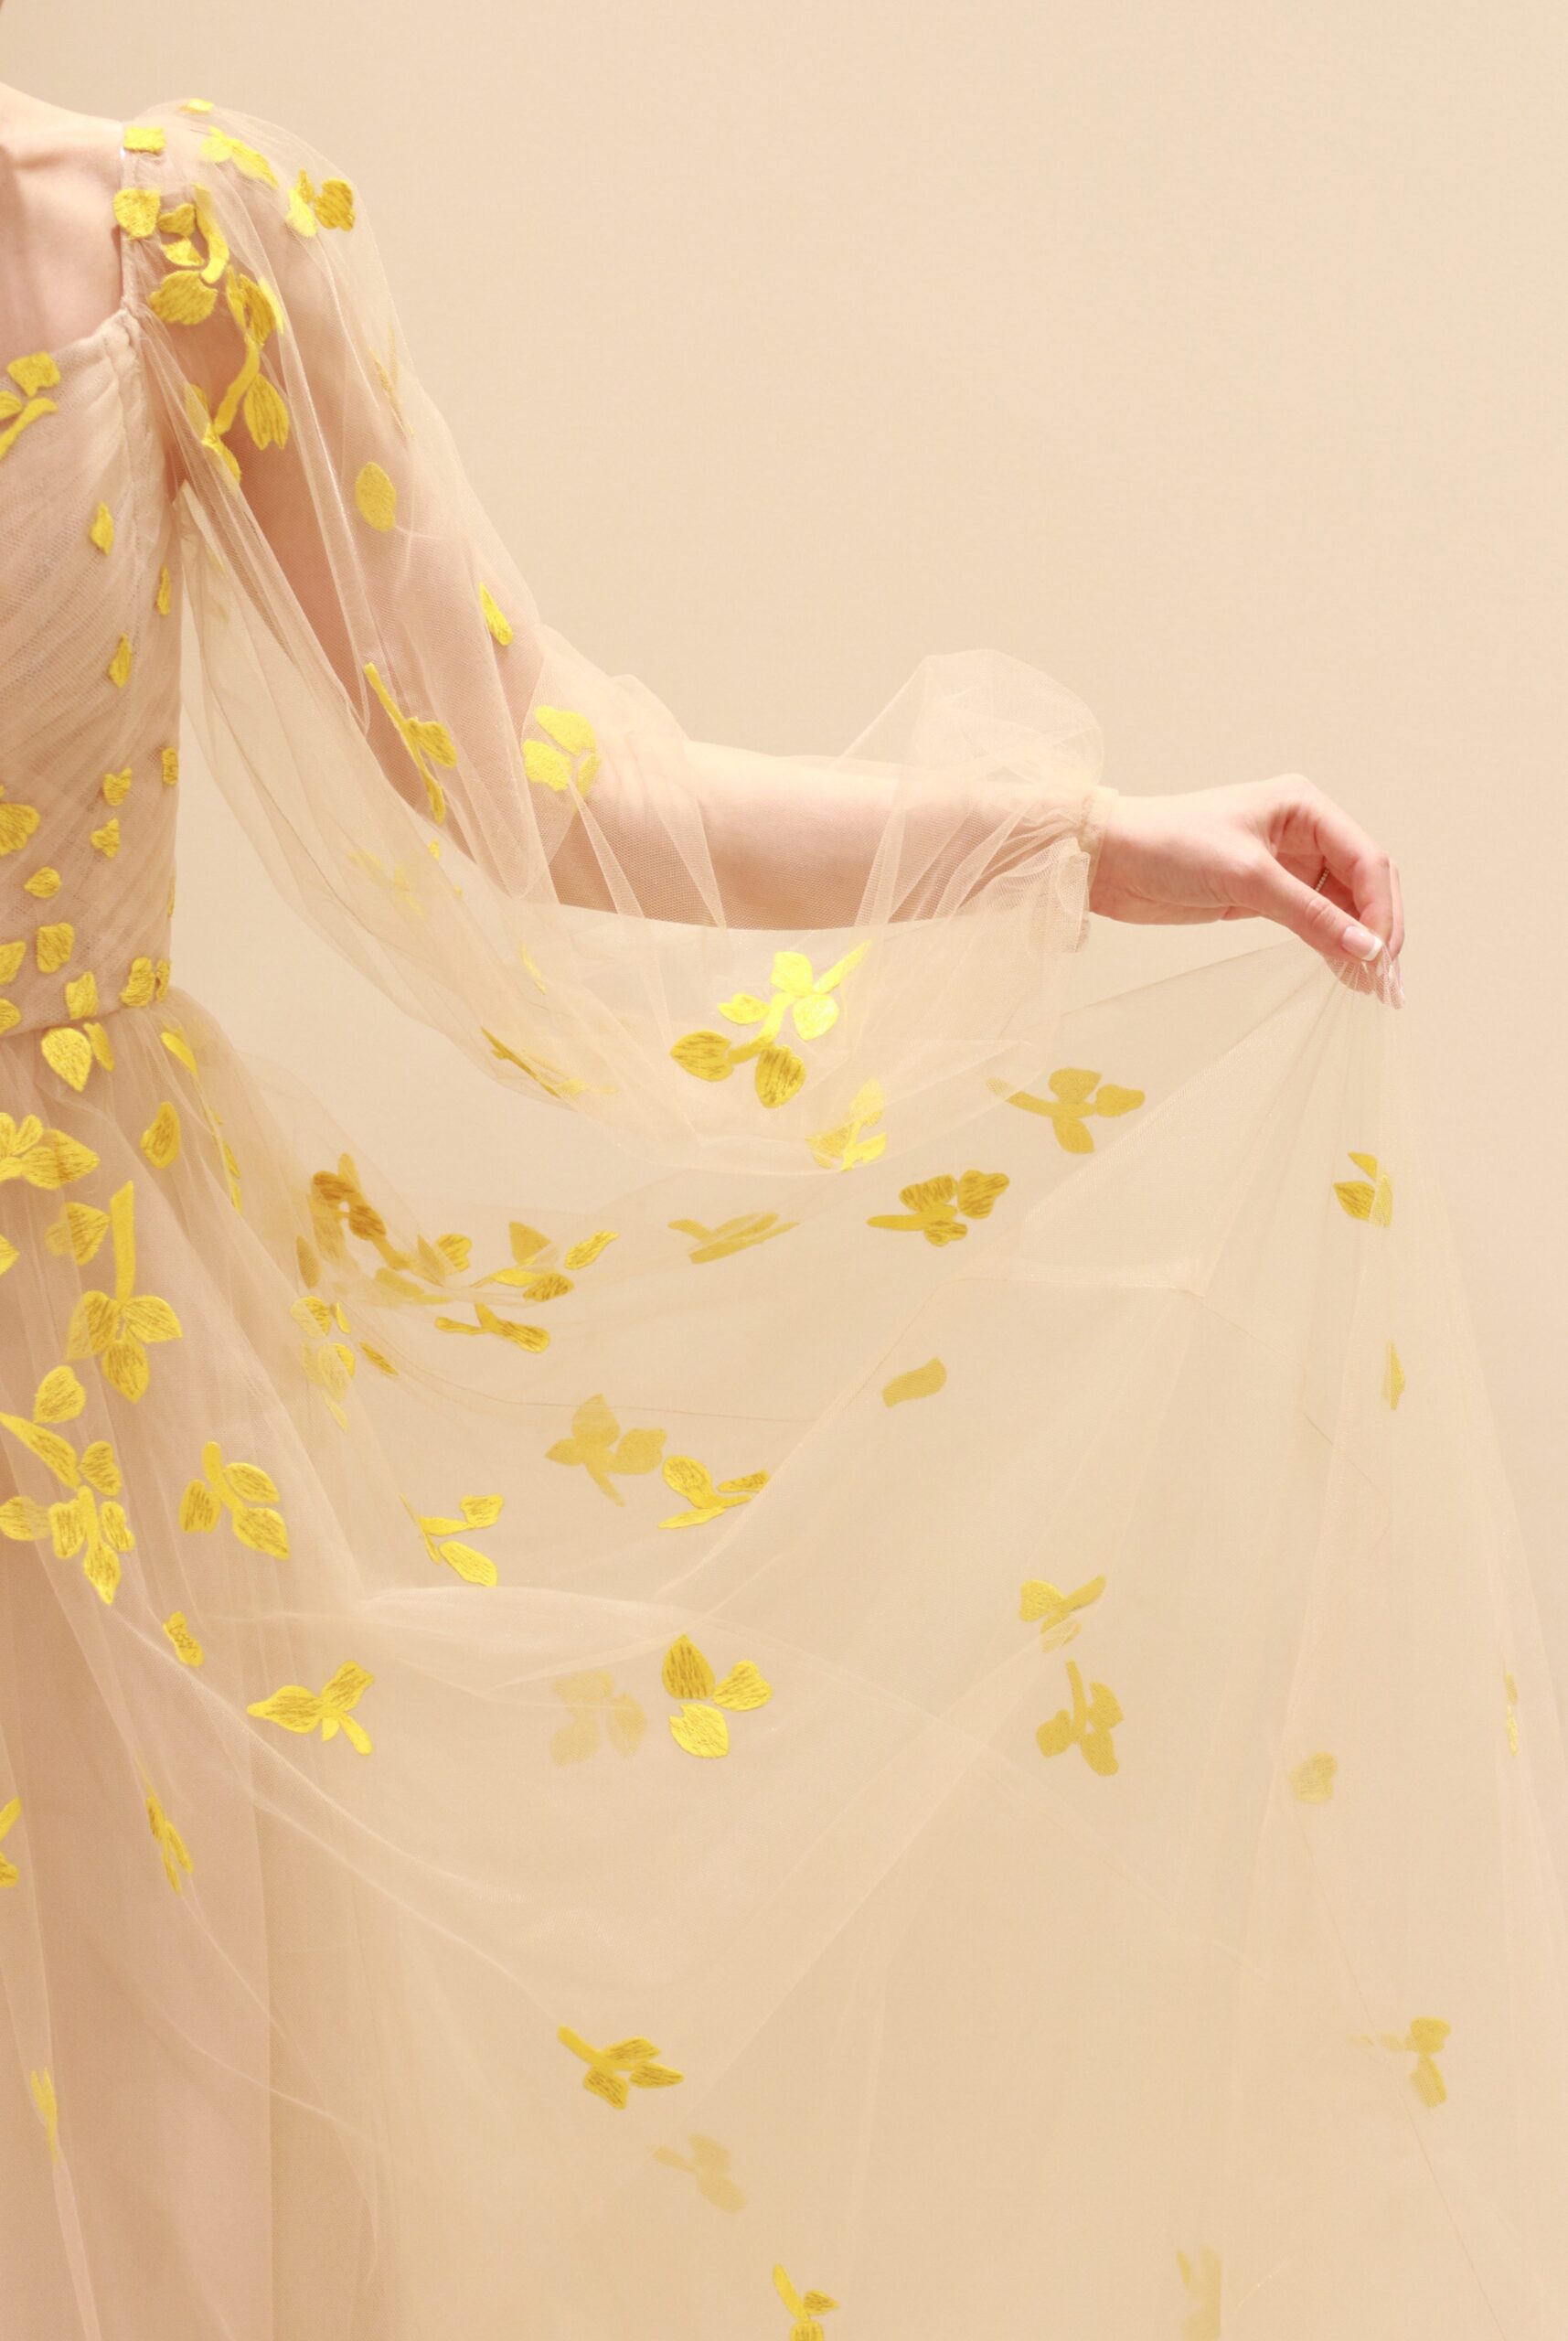 ベージュの柔らかなチュールの上に施されたイエローのフラワー刺繍は花嫁の動きに合わせて柔らかく舞い、会場の雰囲気を華やかに彩ります。